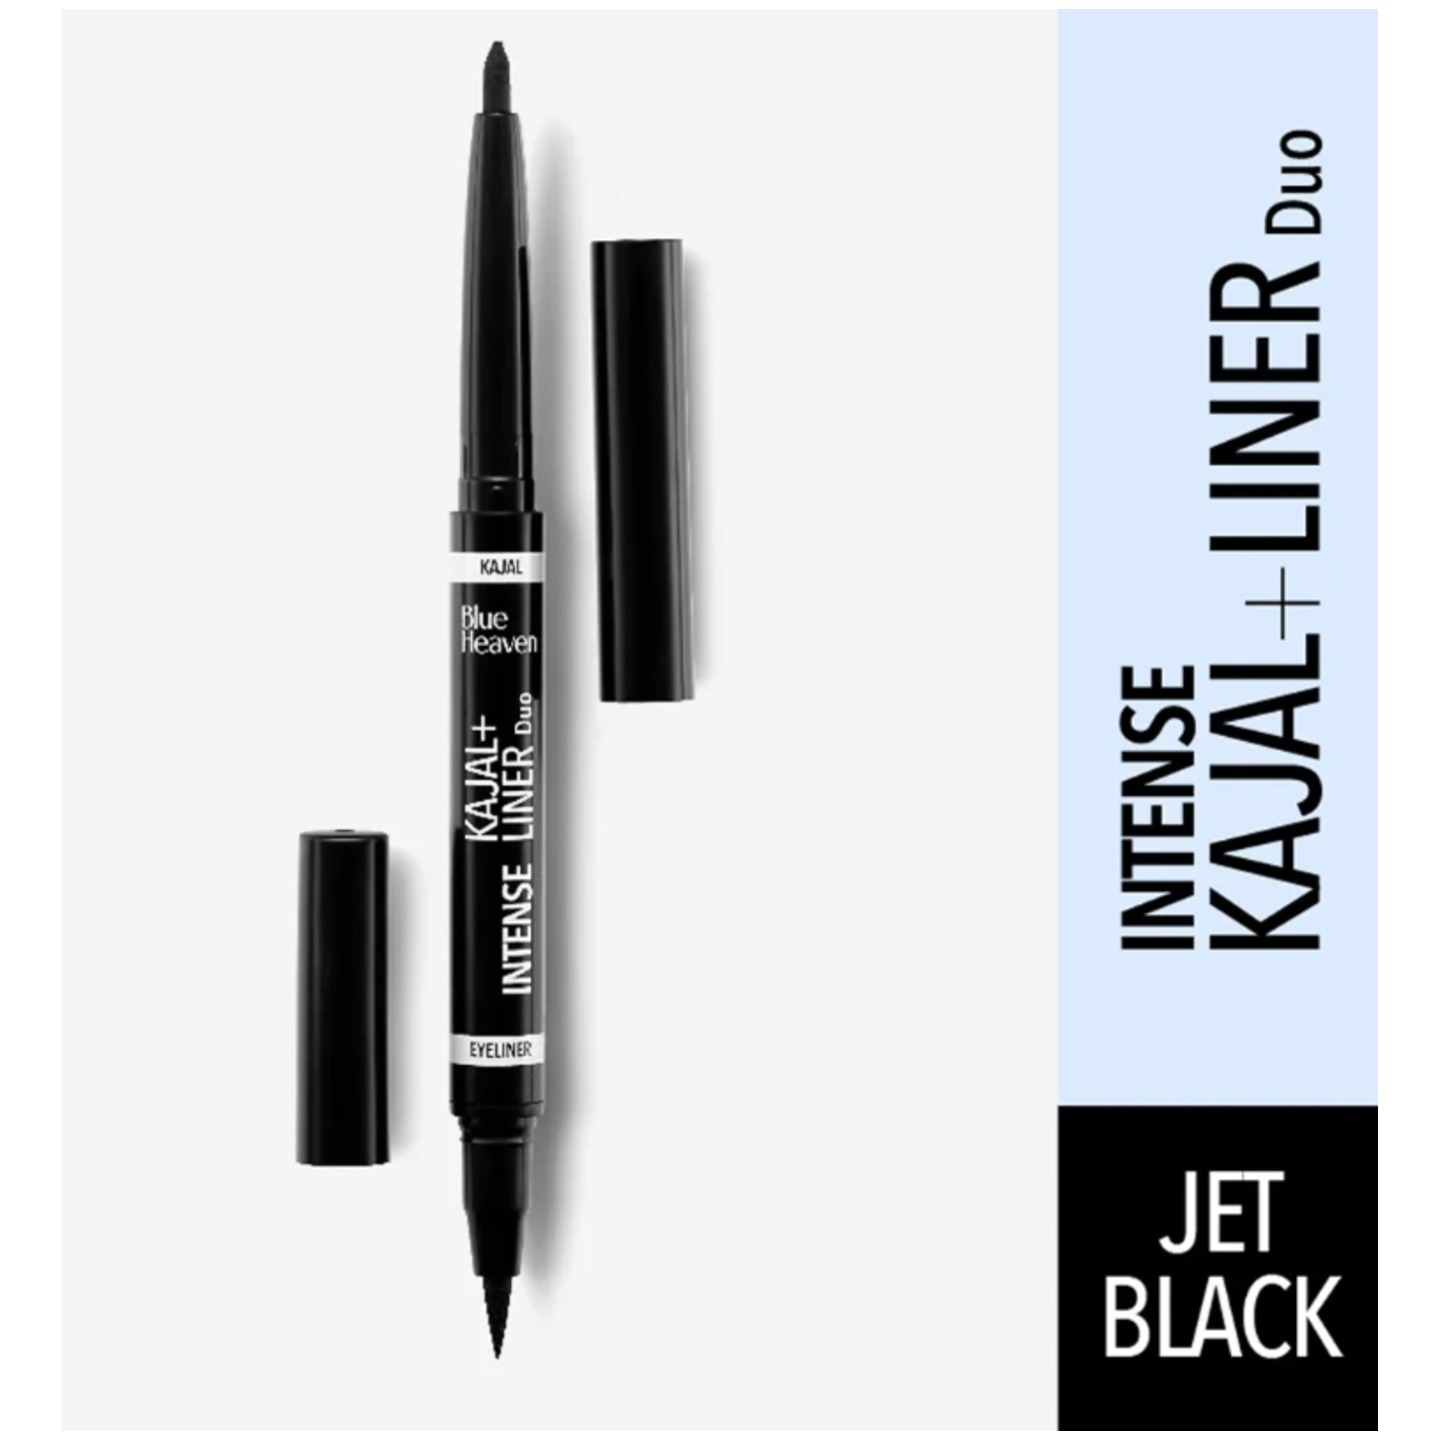 Blue Heaven Intense Duo KajalEyeliner - Jet Black 0.4MLEYE LINER +0.3GMKAJAL